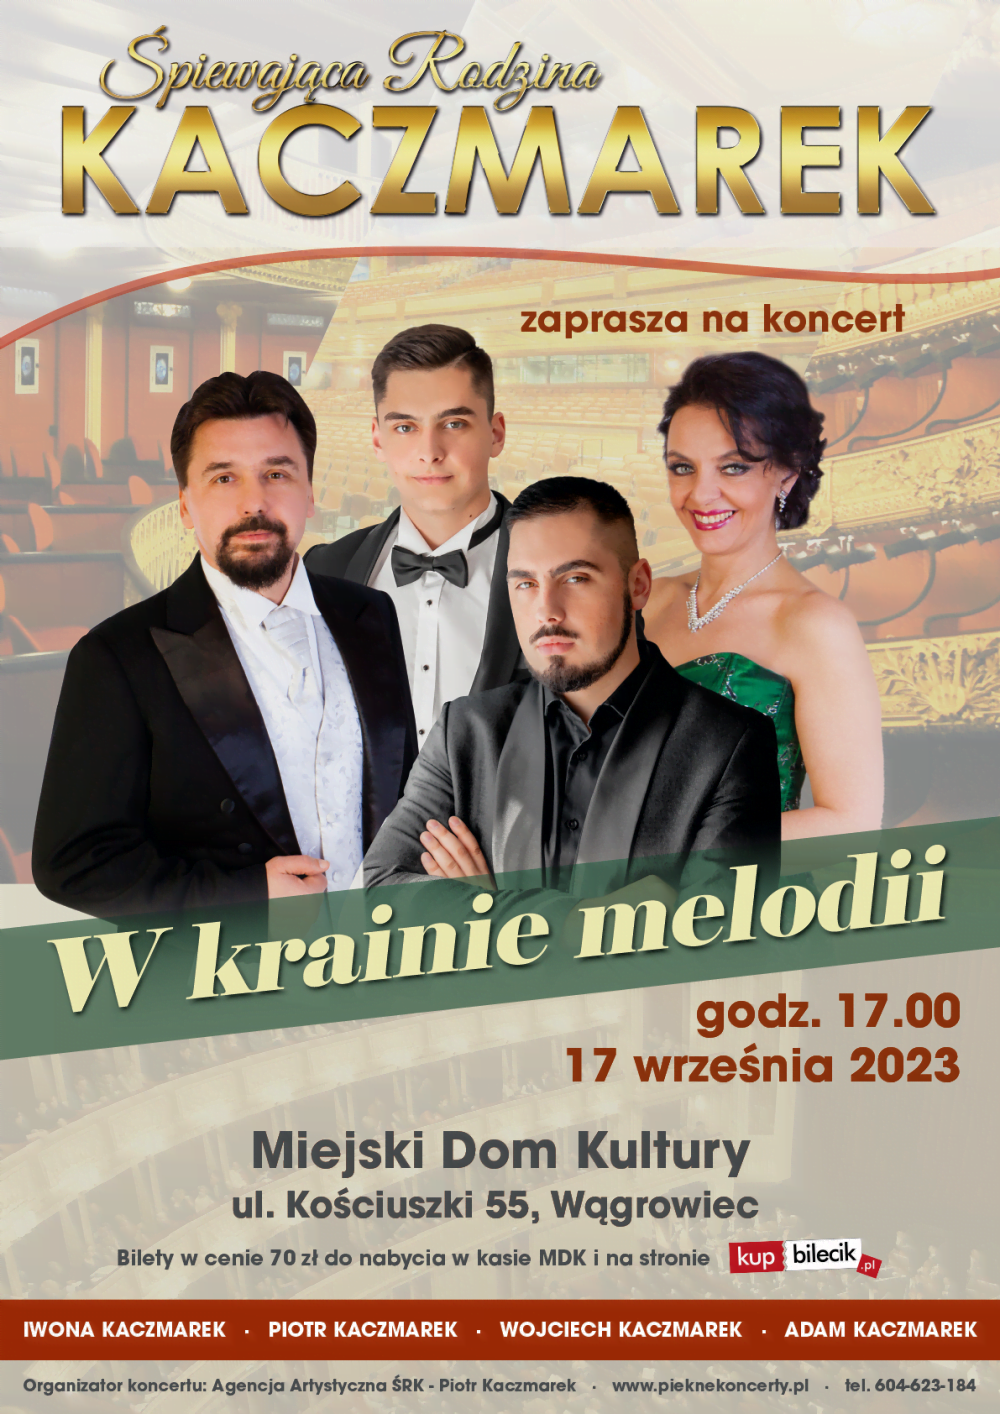 "W krainie melodii" - Śpiewająca Rodzina Kaczmarek (479562)